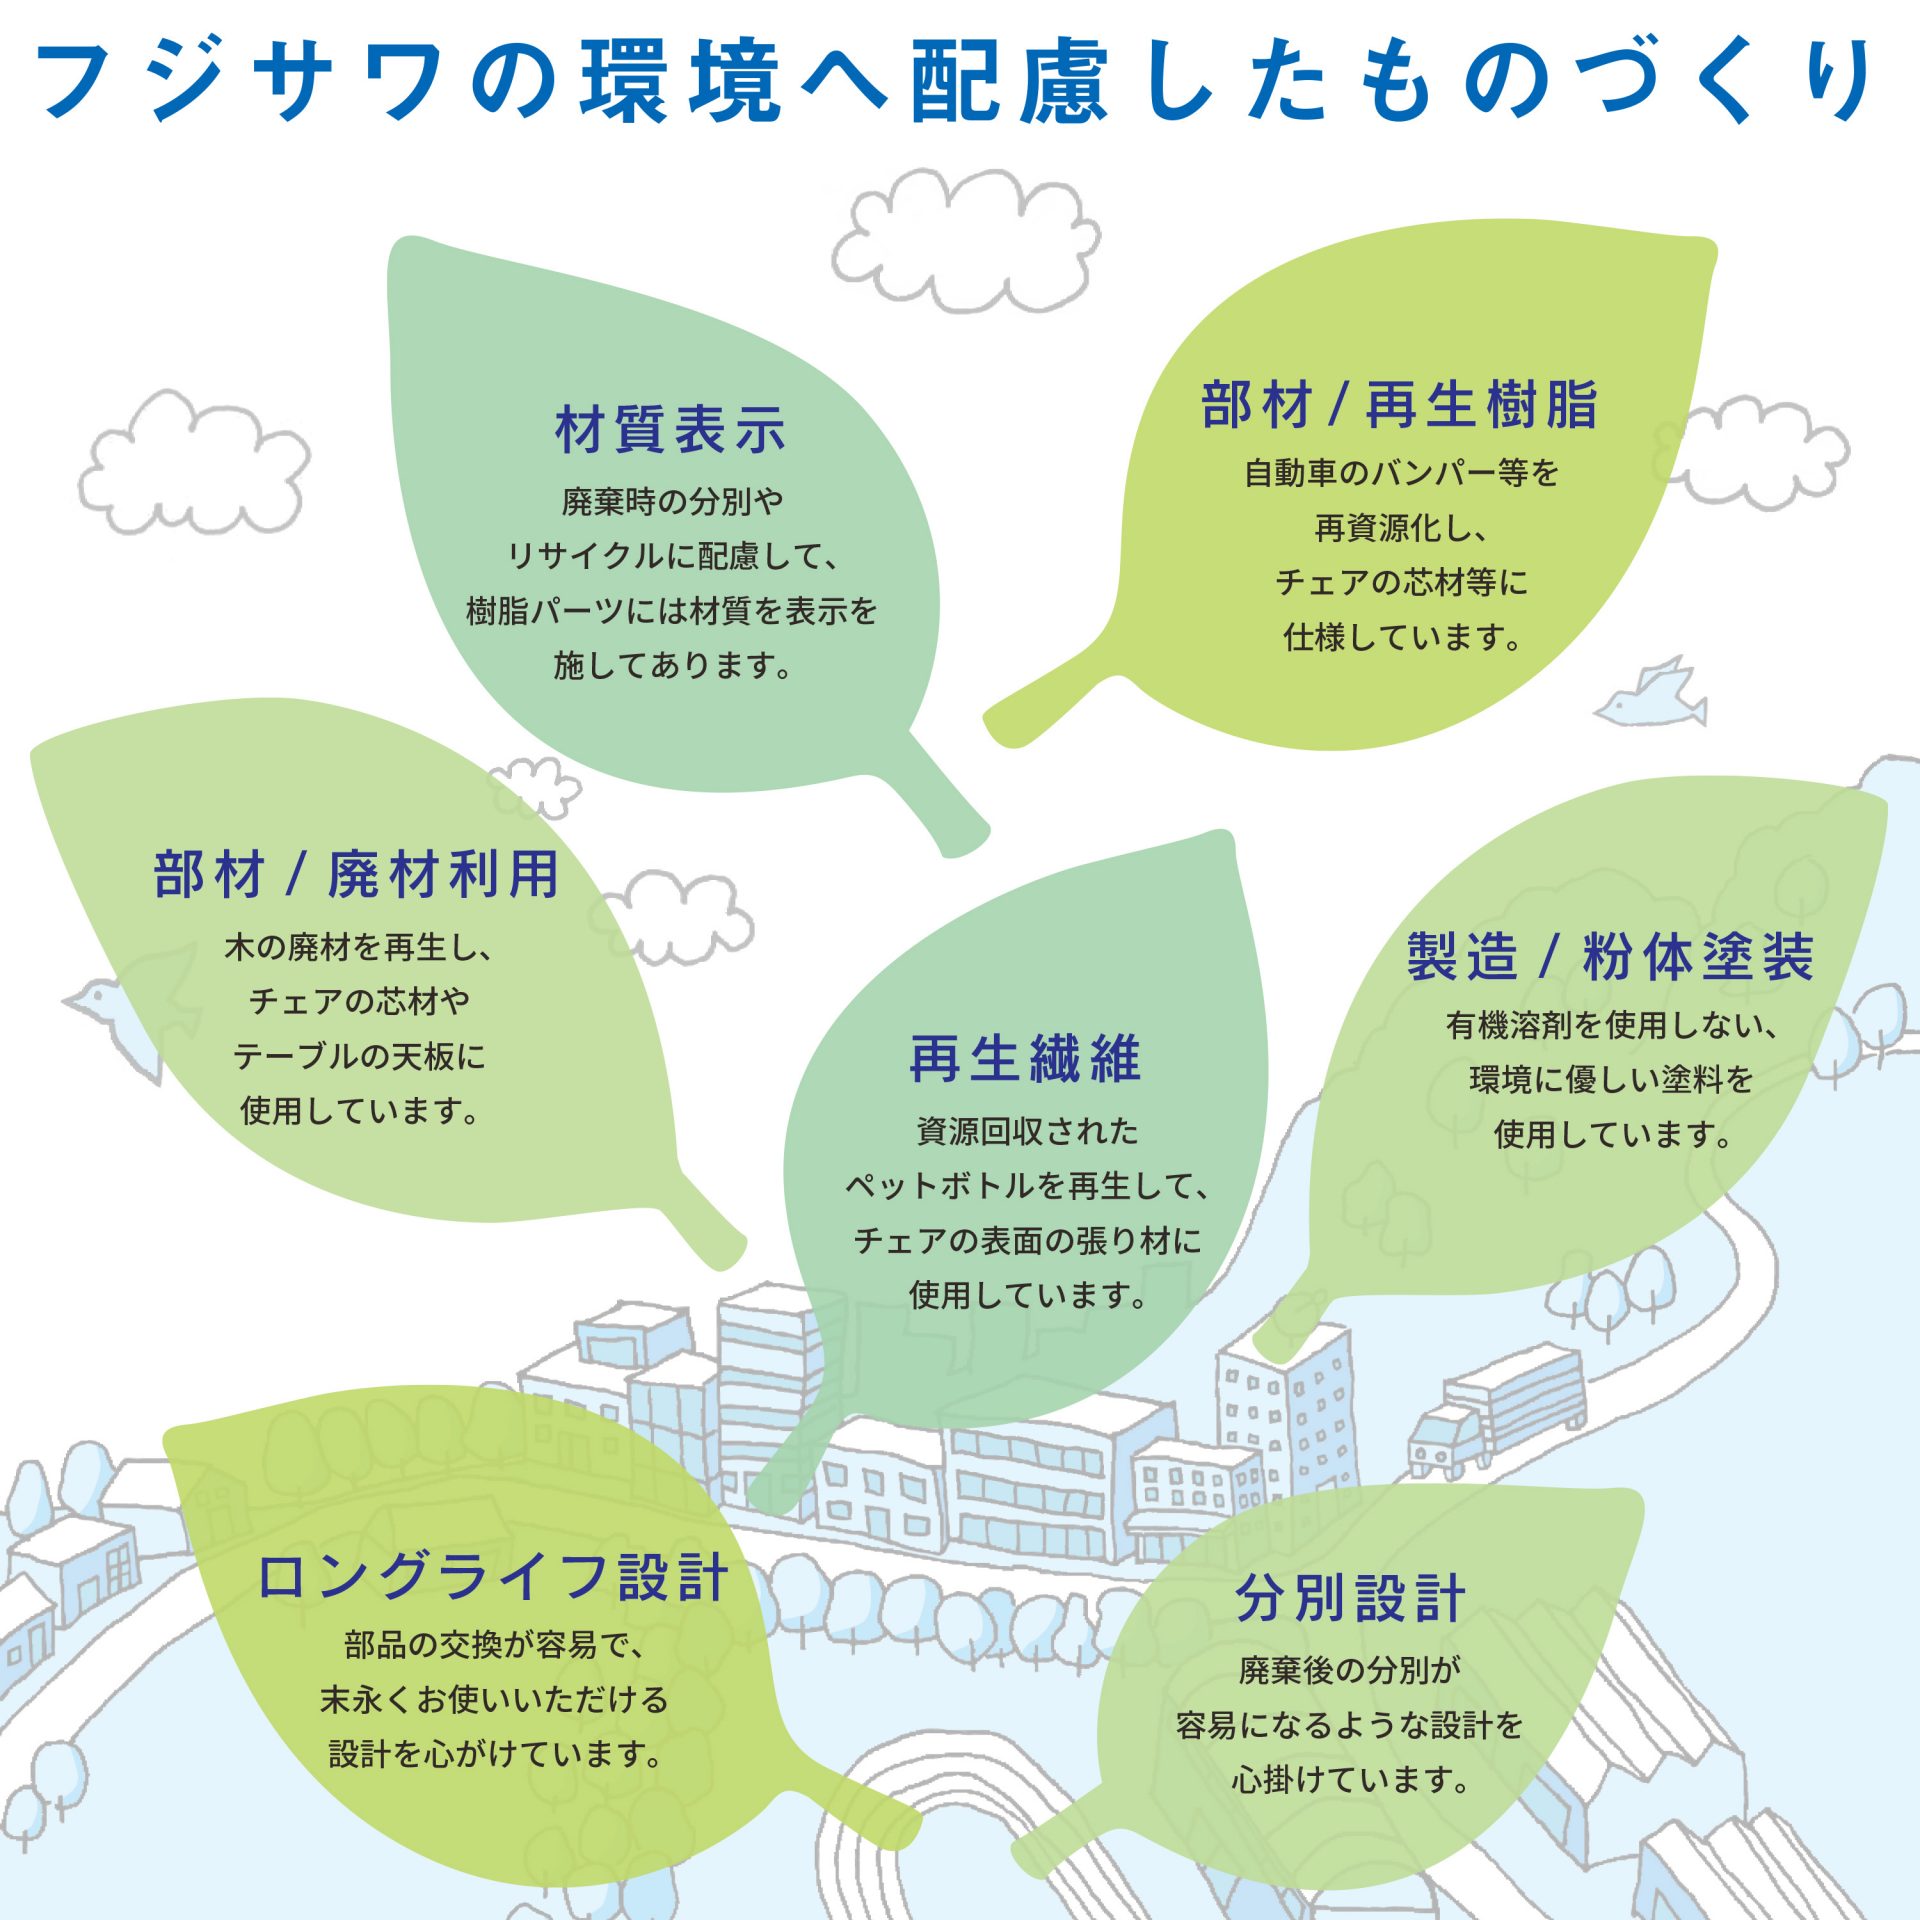 藤沢工業の自然環境への取り組み